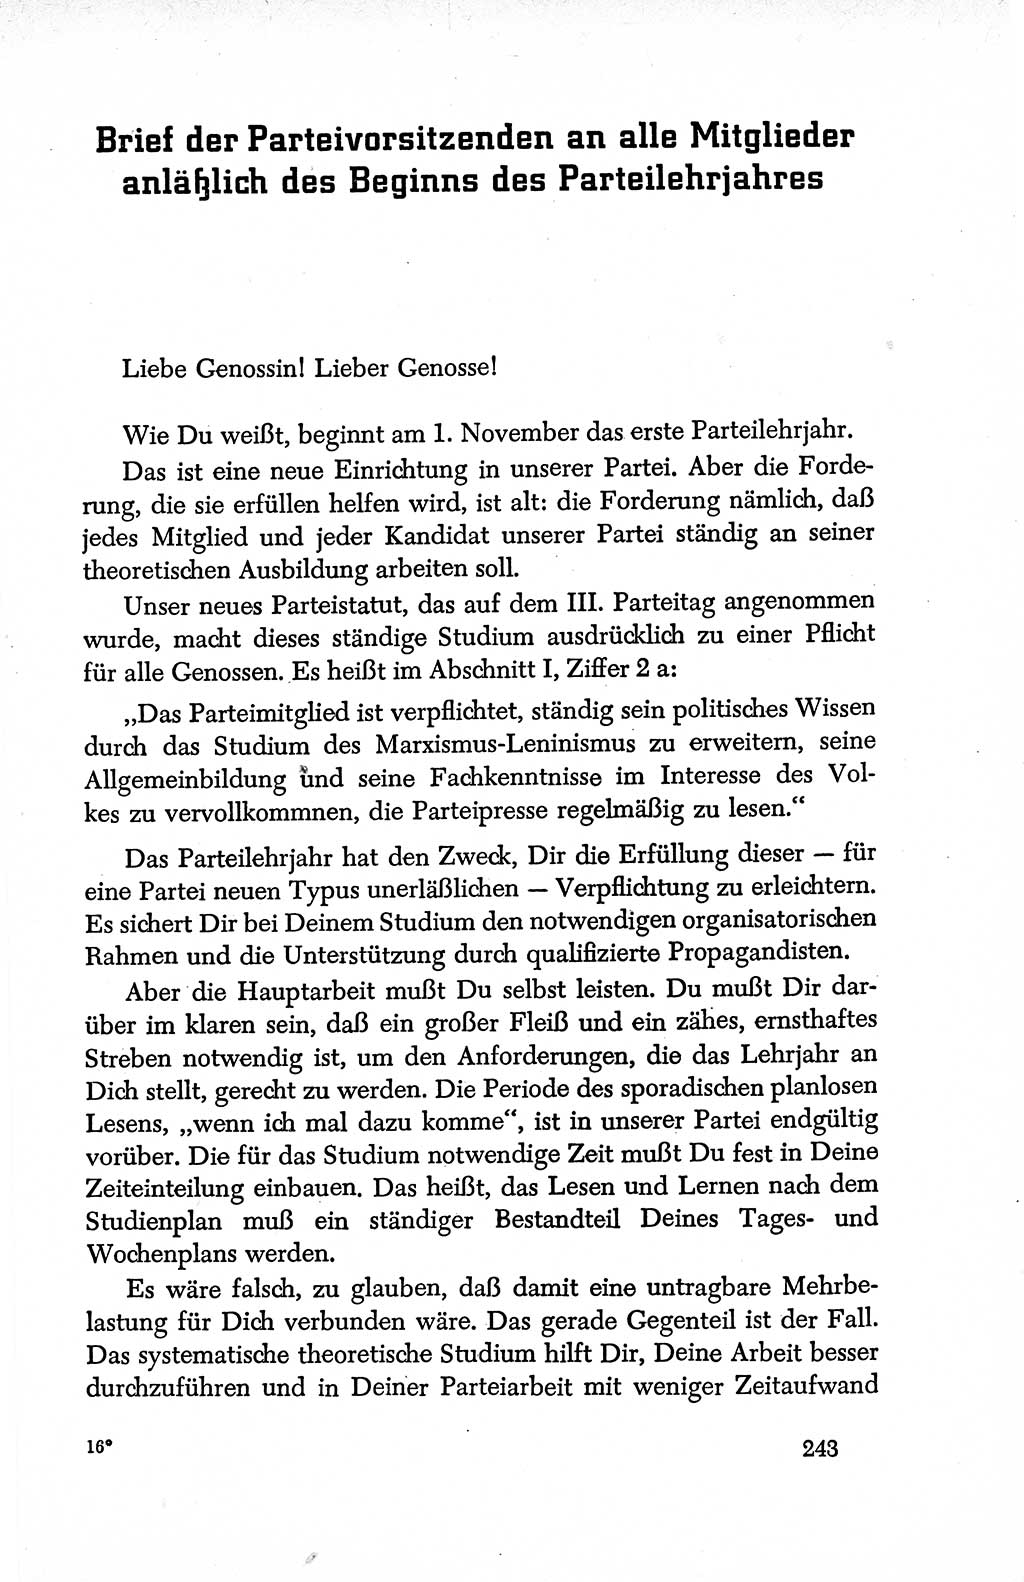 Dokumente der Sozialistischen Einheitspartei Deutschlands (SED) [Deutsche Demokratische Republik (DDR)] 1950-1952, Seite 243 (Dok. SED DDR 1950-1952, S. 243)